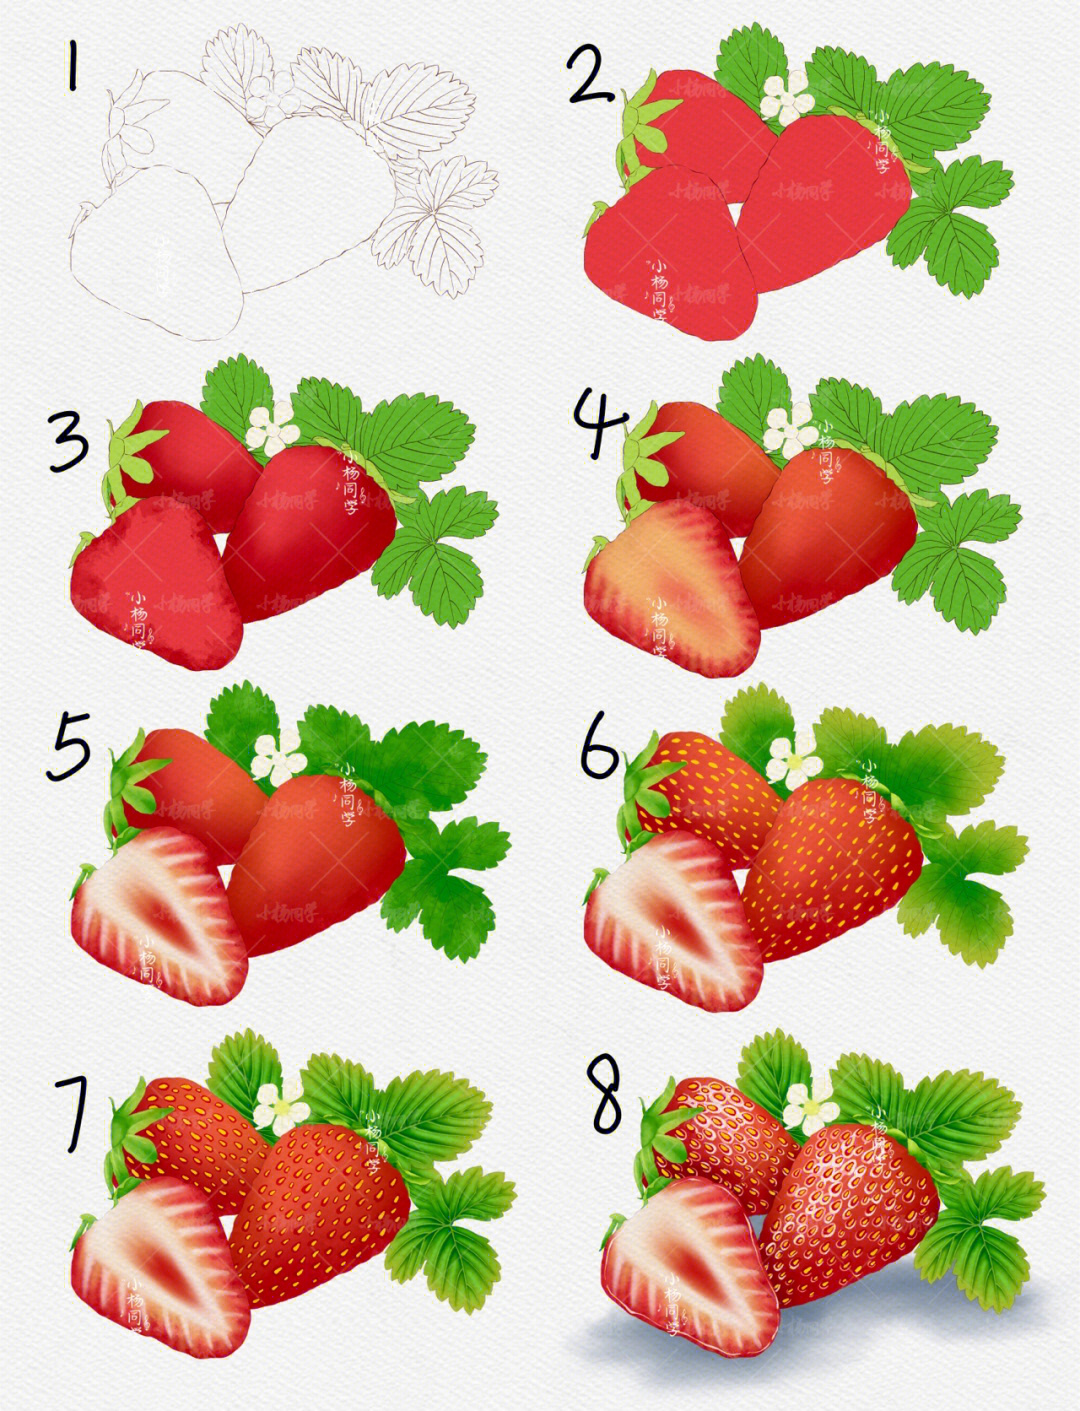 草莓结构示意图图片